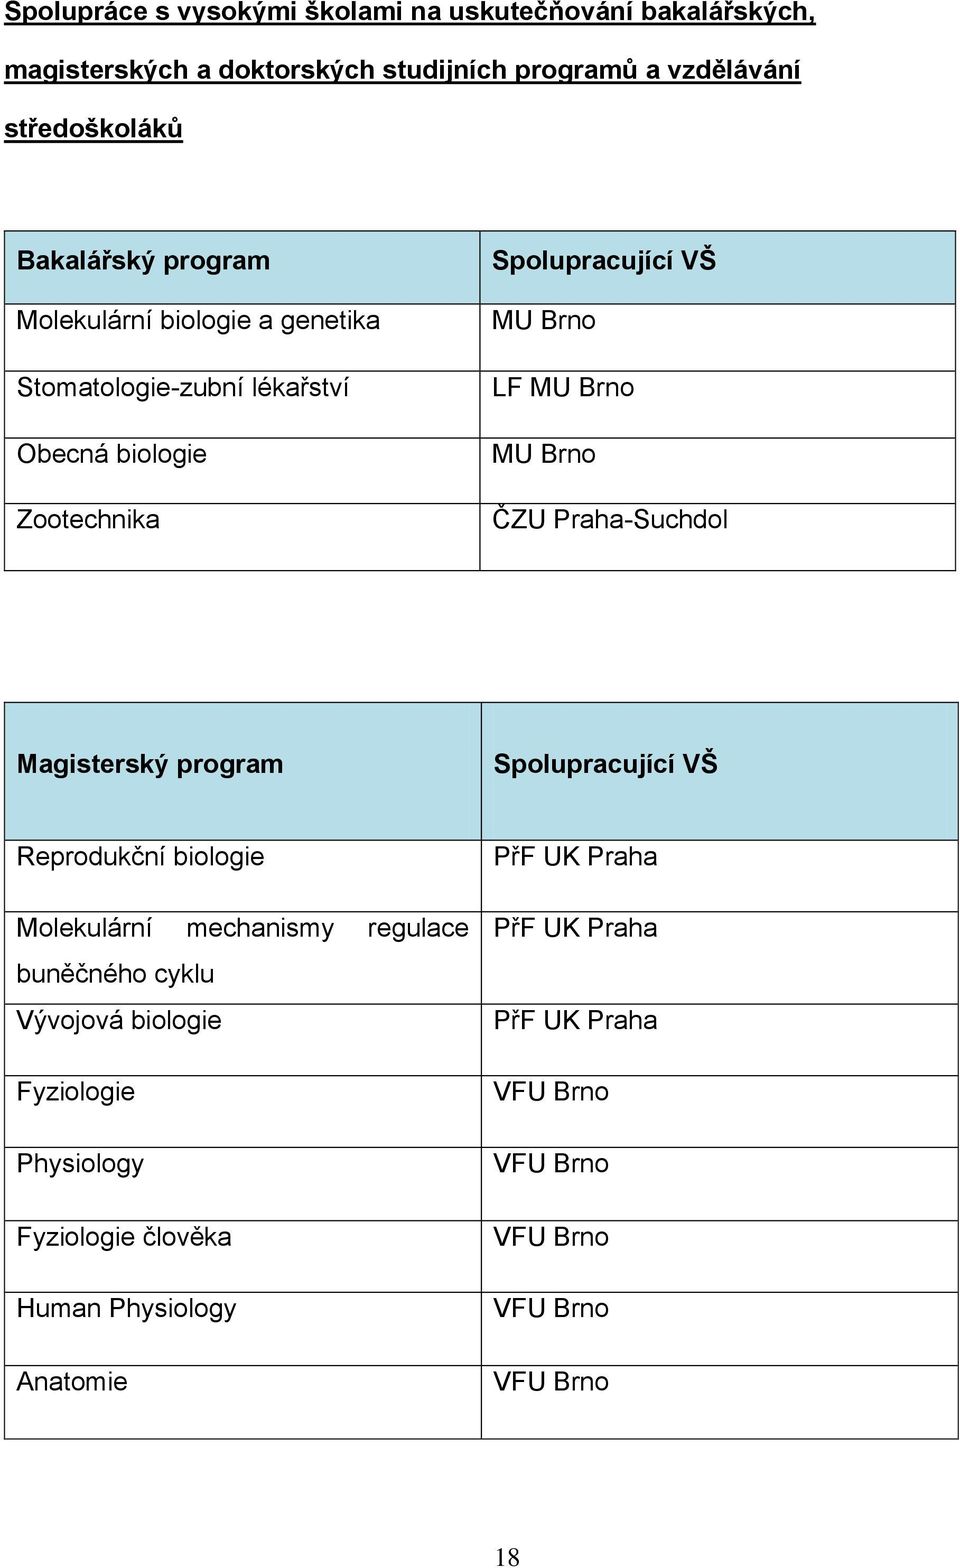 Praha-Suchdol Magisterský program Spolupracující VŠ Reprodukční biologie Molekulární mechanismy regulace buněčného cyklu Vývojová biologie